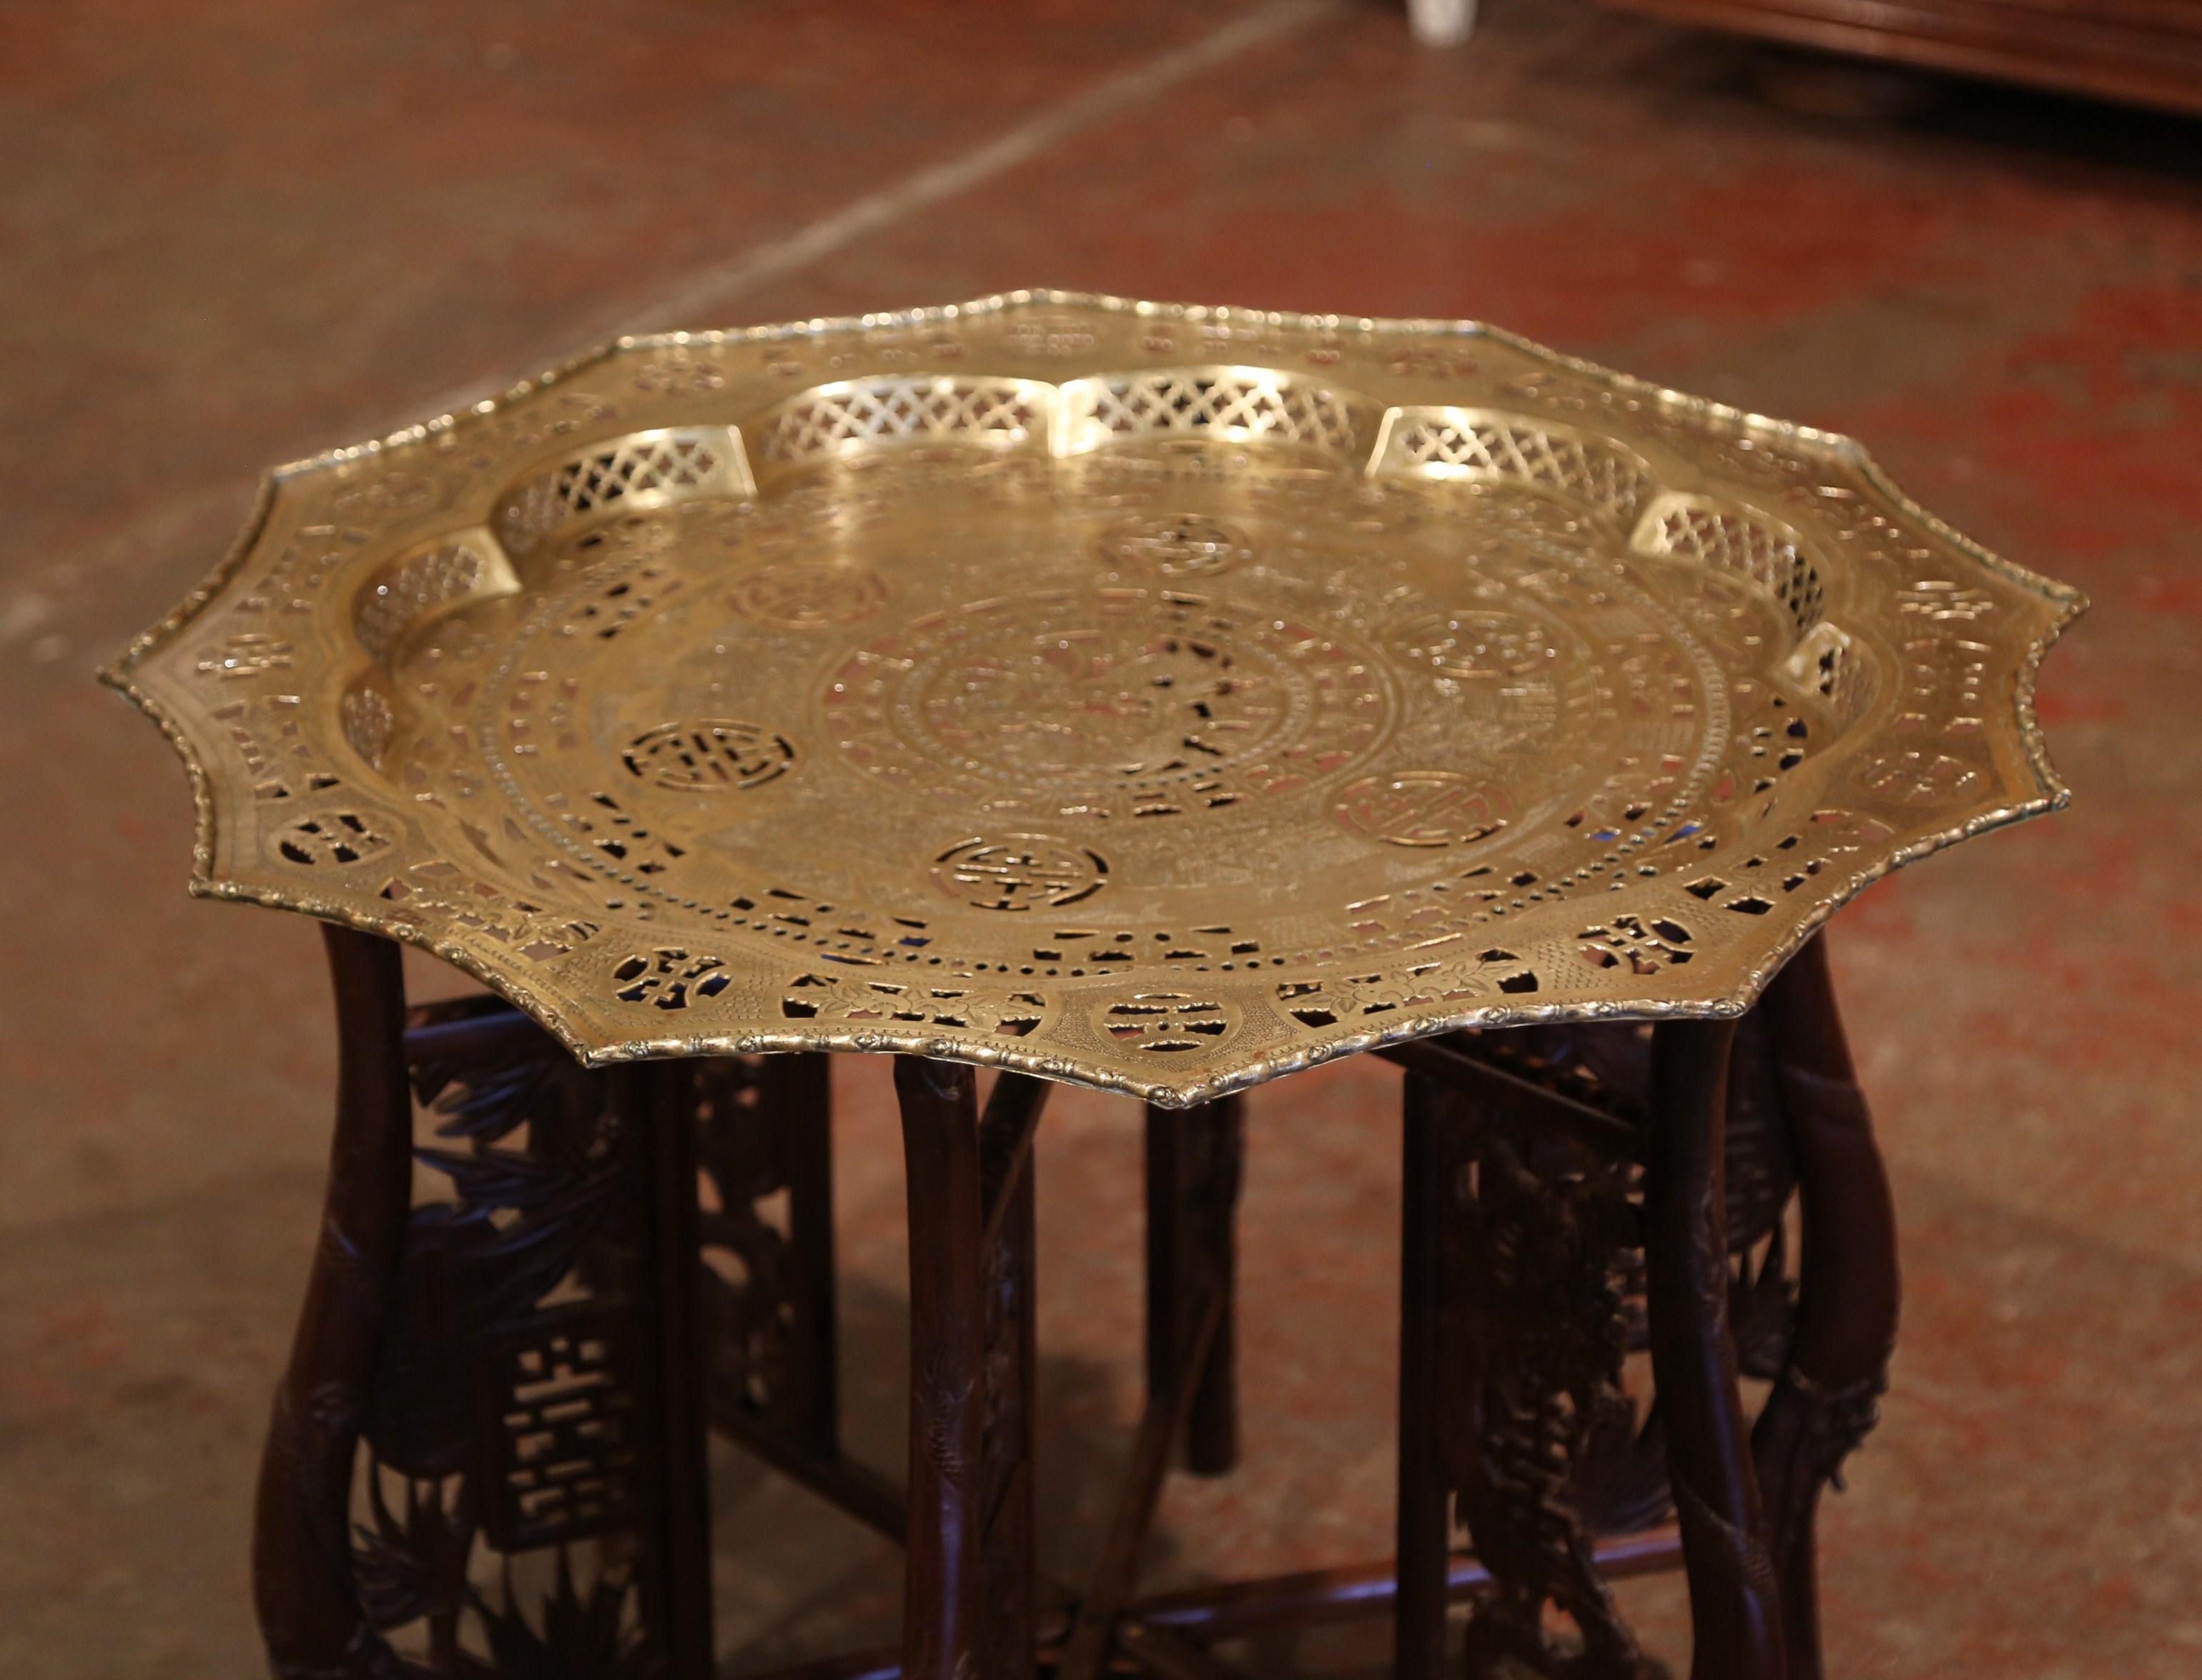 Cette petite table basse polyvalente a été fabriquée en Chine, circa 1950. La base pliante avec supports décoratifs est formée de six pieds sculptés qui peuvent facilement être repliés à plat. Le plateau en laiton décoré de motifs géométriques